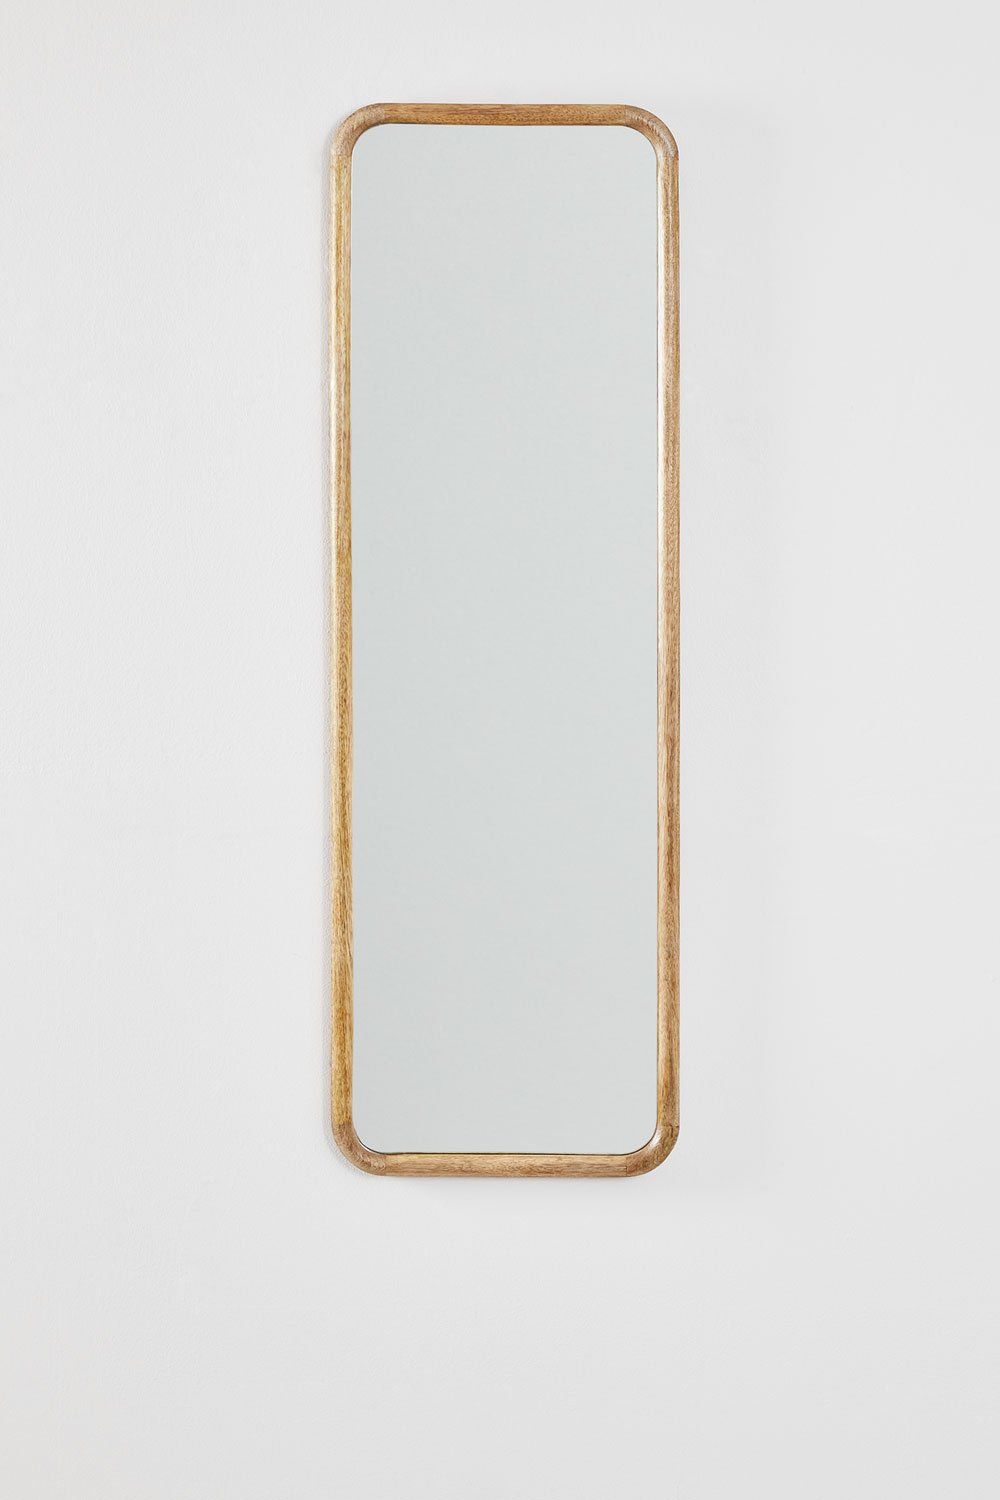 Prostokątne lustro ścienne z drewna mango (36,5x115 cm) Mirtzia, obrazek w galerii 1